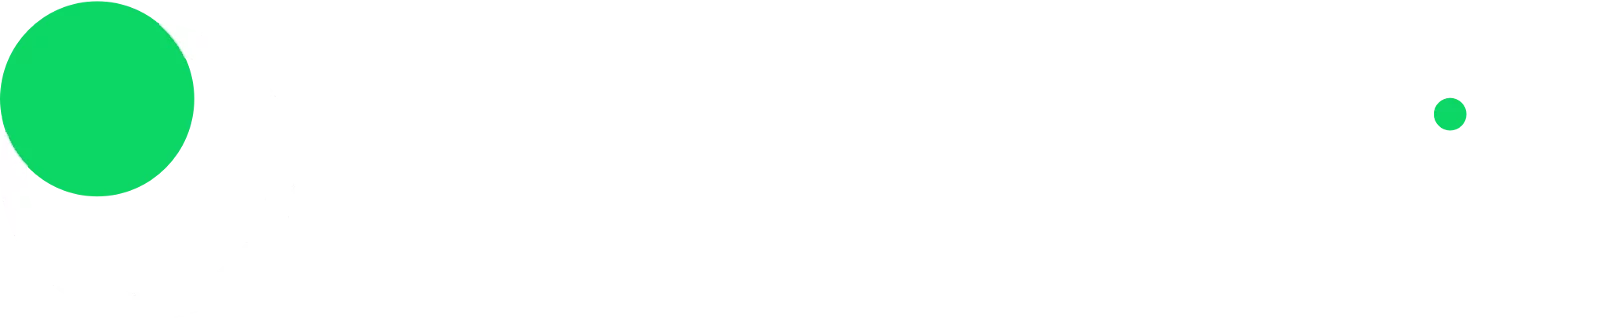 Sportsbet io logo.